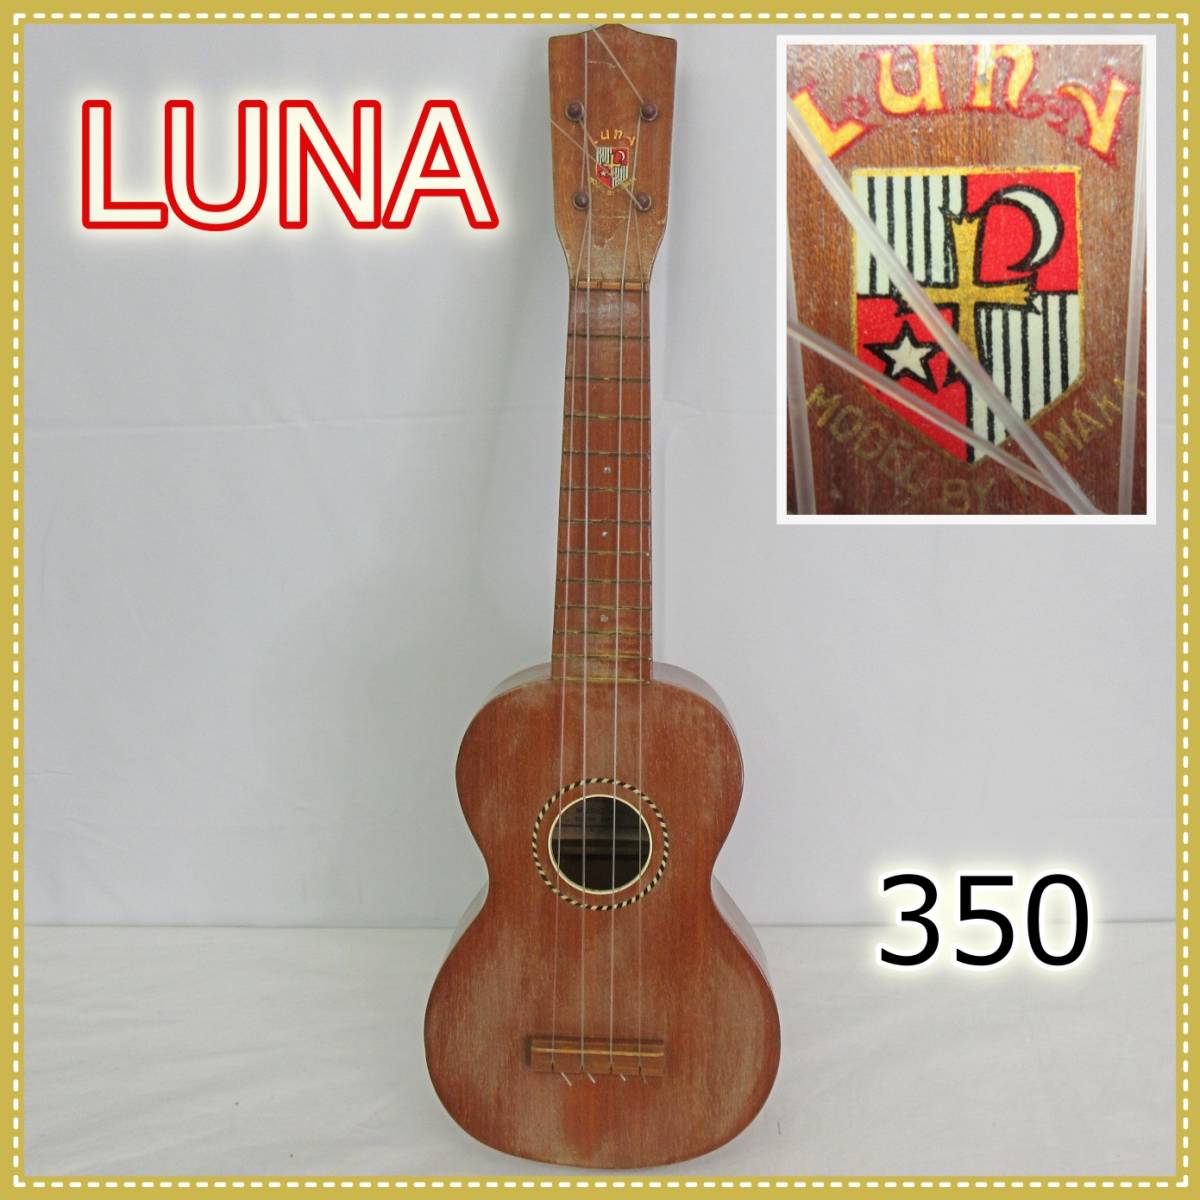 円高還元 No. Luna 600 1960年代 ルナ ソプラノウクレレ - 弦楽器 